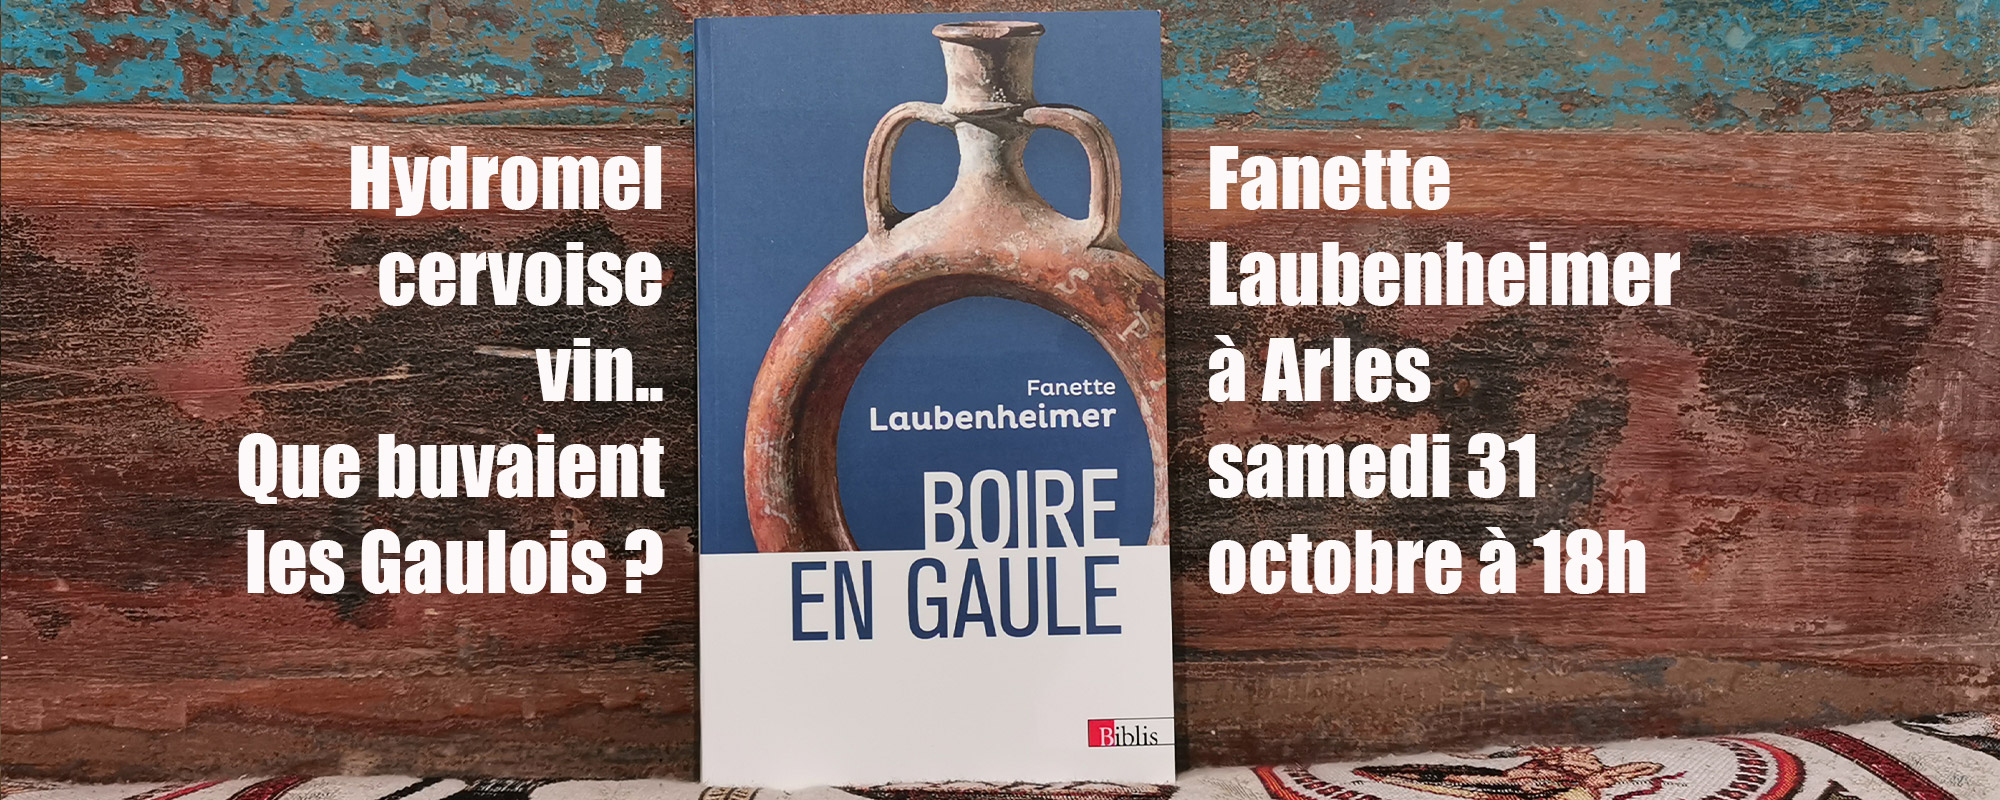 Que buvaient les Gaulois ? Fanette Laubenheimer à Arles